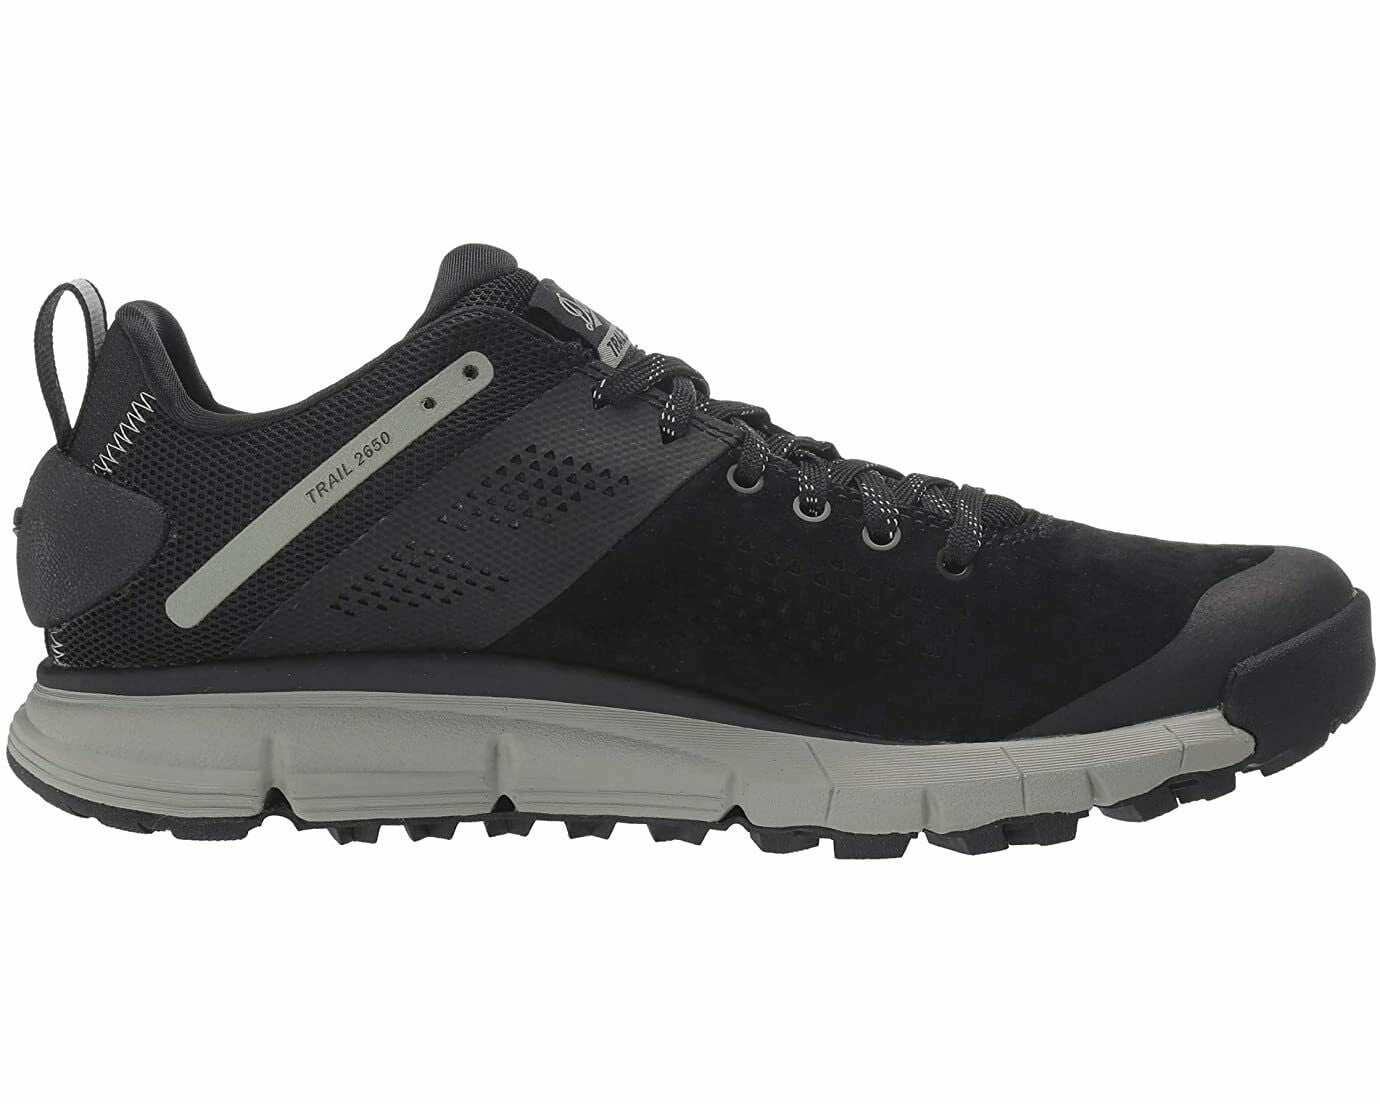 Danner Men's Trail 2650 Leather & Textile Hiking Shoes 61275 - Walmart.com